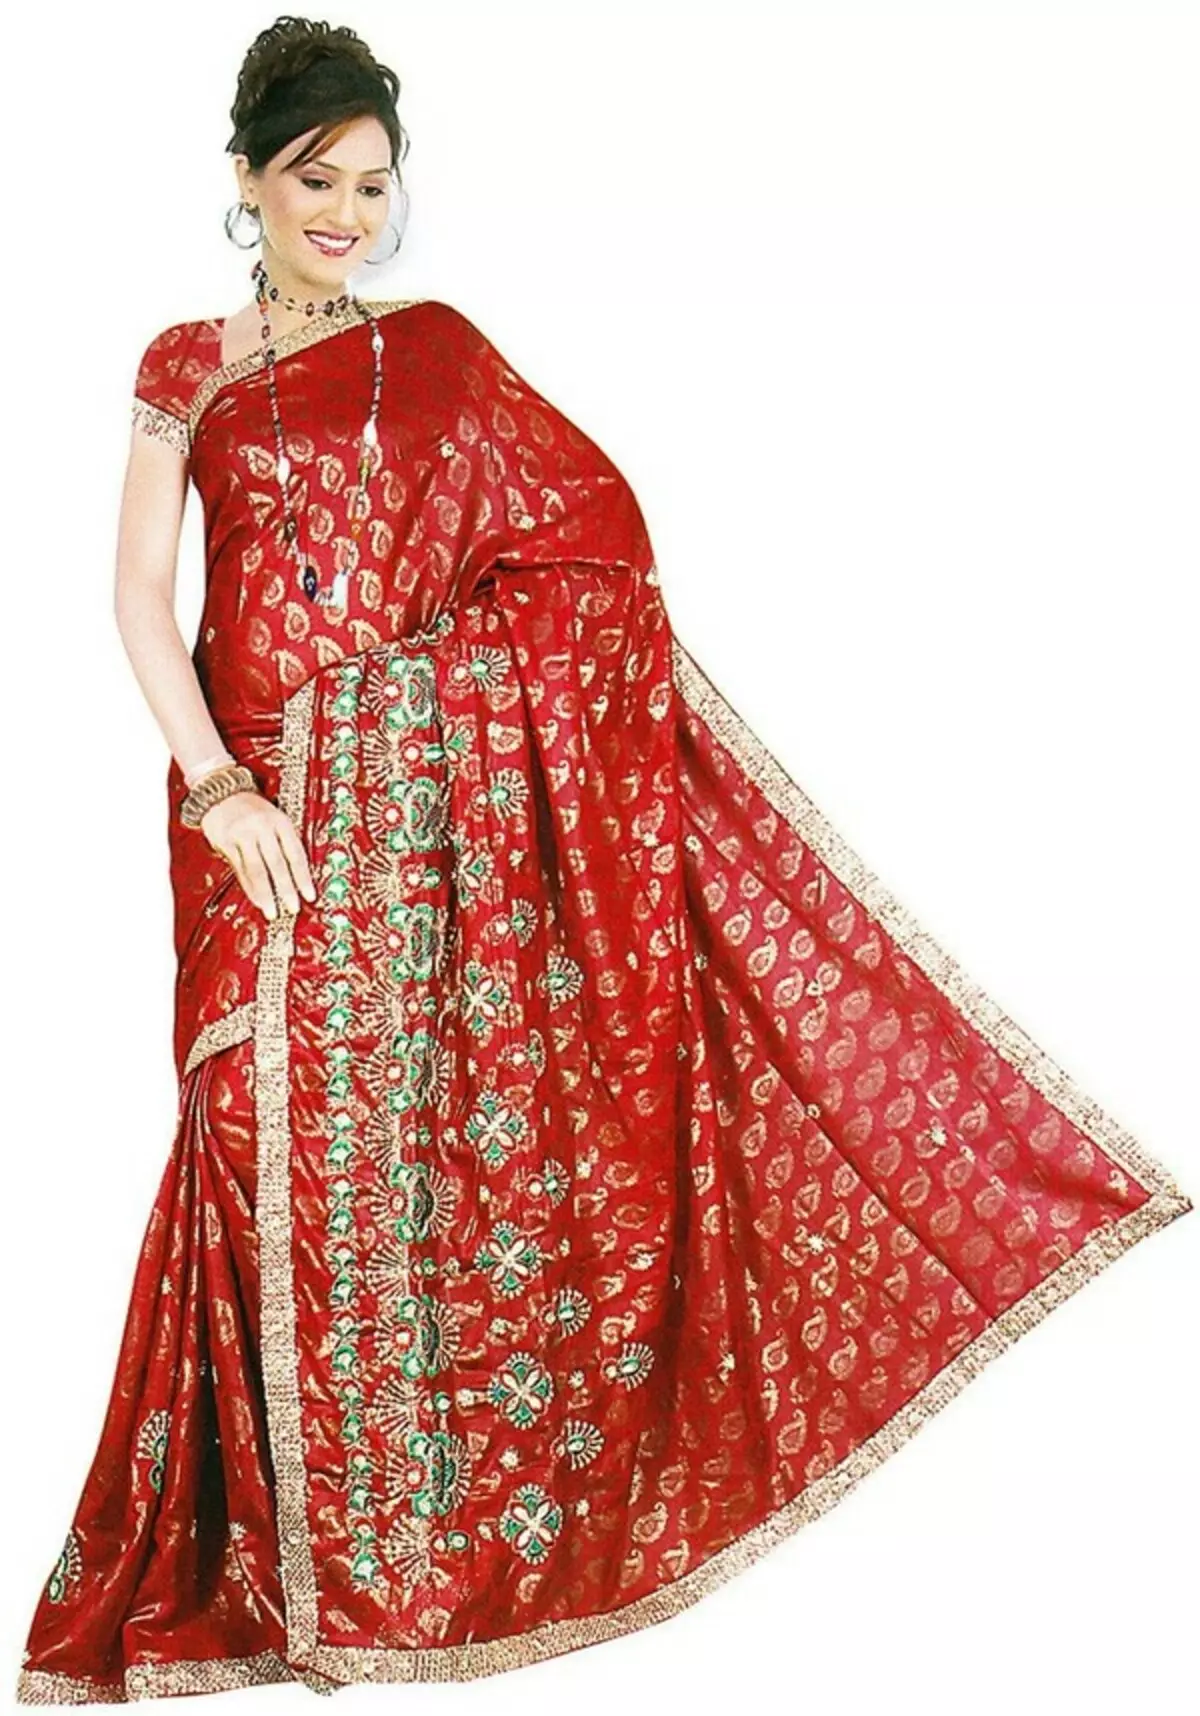 Bộ đồ Ấn Độ (79 hình ảnh): Trang phục quốc gia cho các cô gái và phụ nữ Ấn Độ cổ đại và hiện đại, trang phục theo phong cách Ấn Độ 1355_31